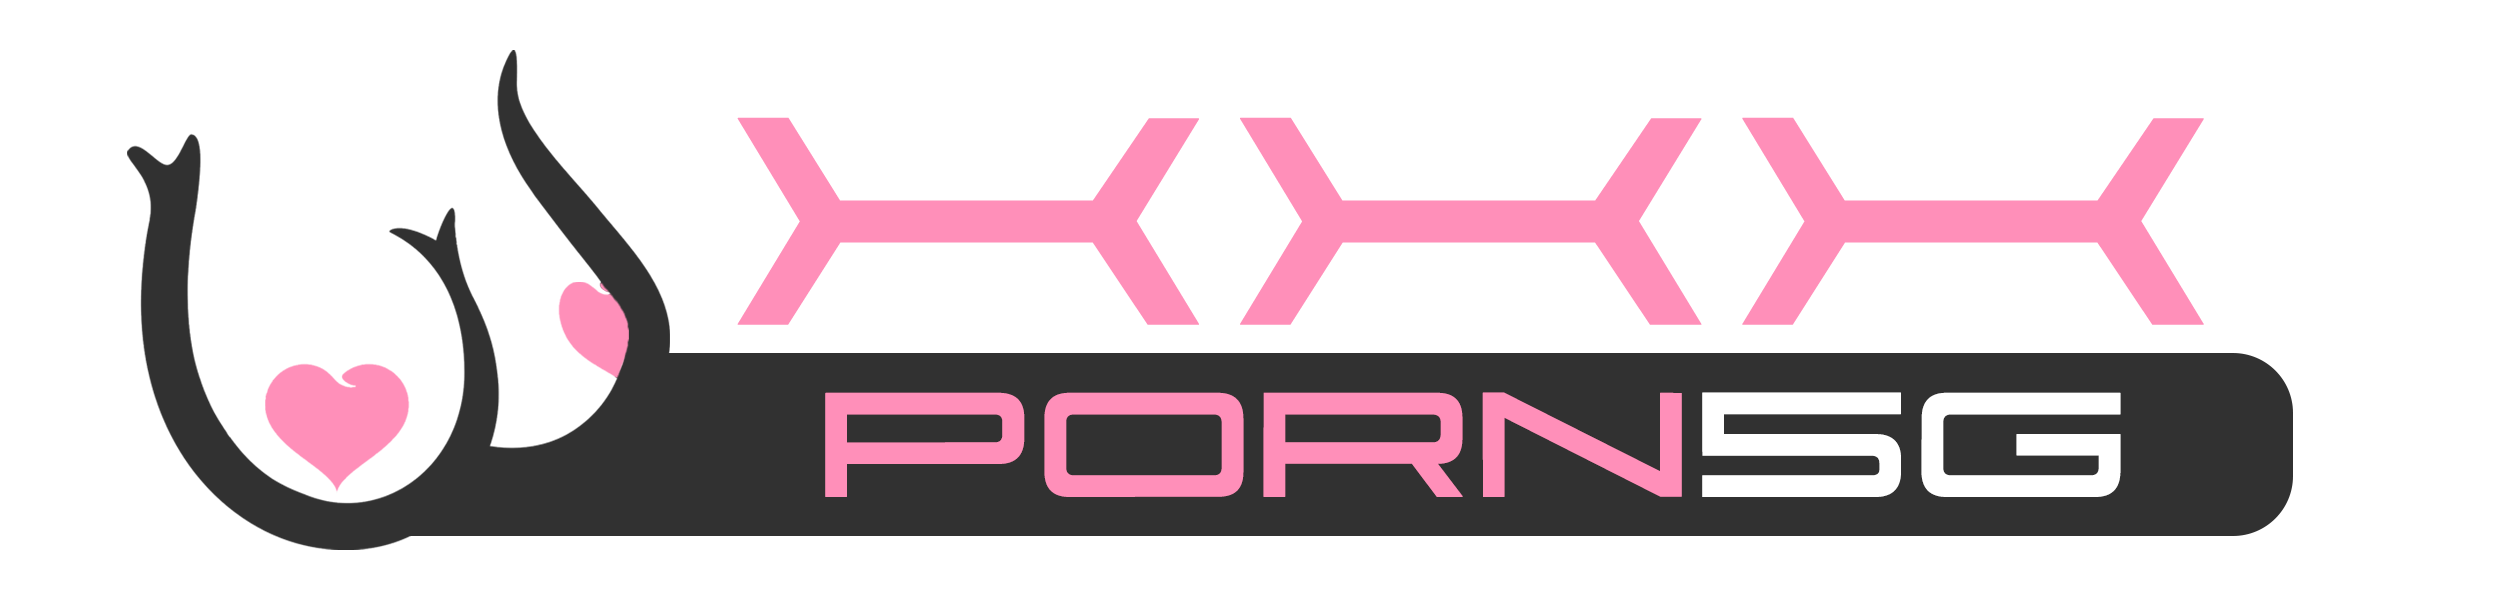 ดูหนัง xxx porn 5g